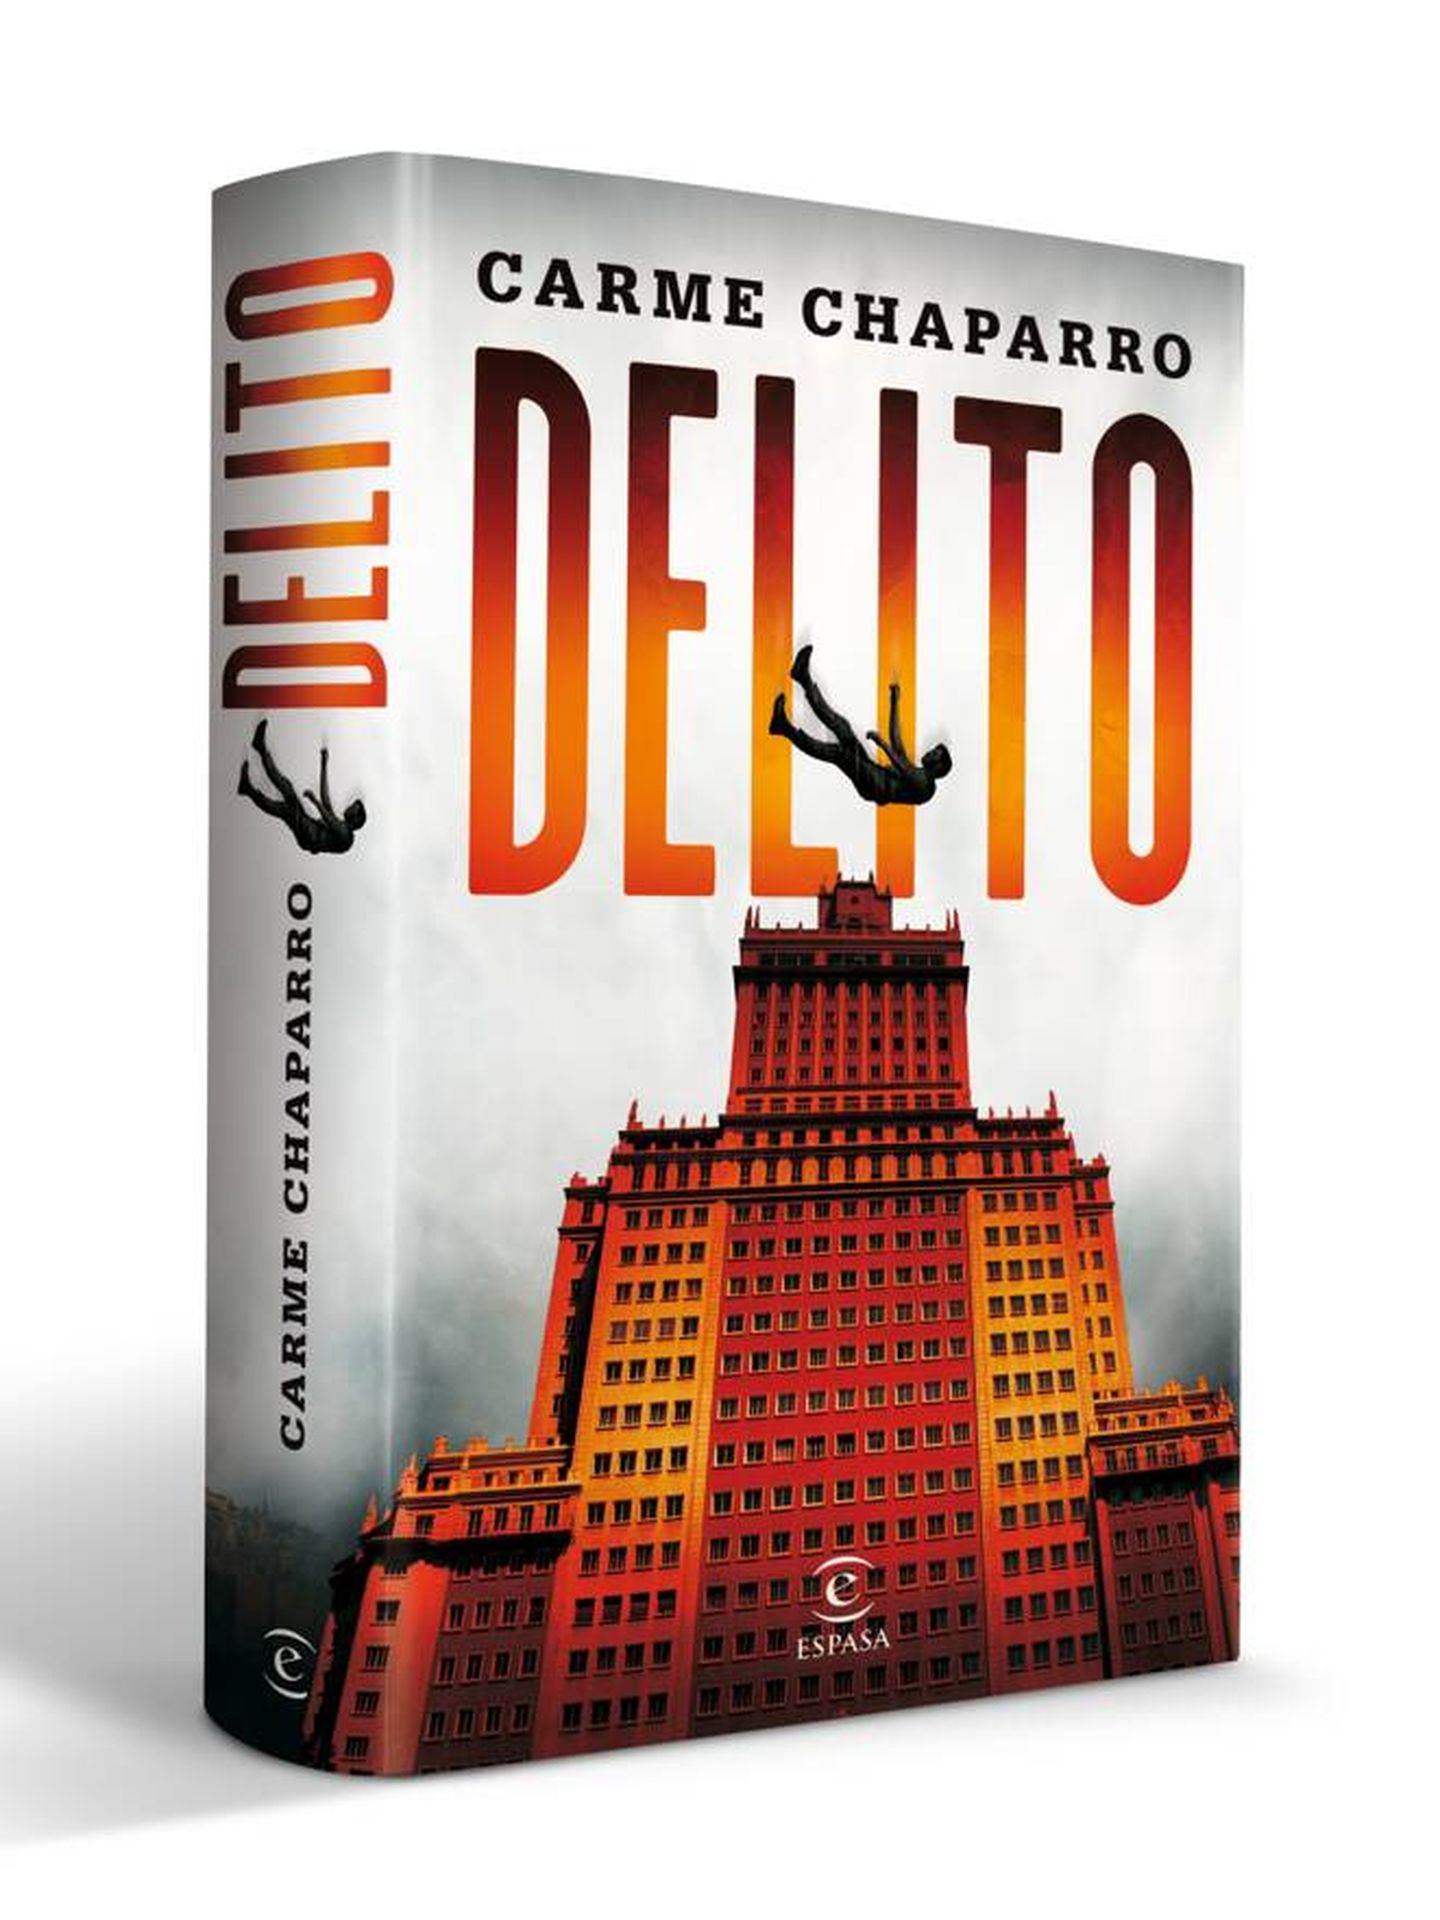 'Delito', sexto libro de Carme Chaparro. (Espasa)